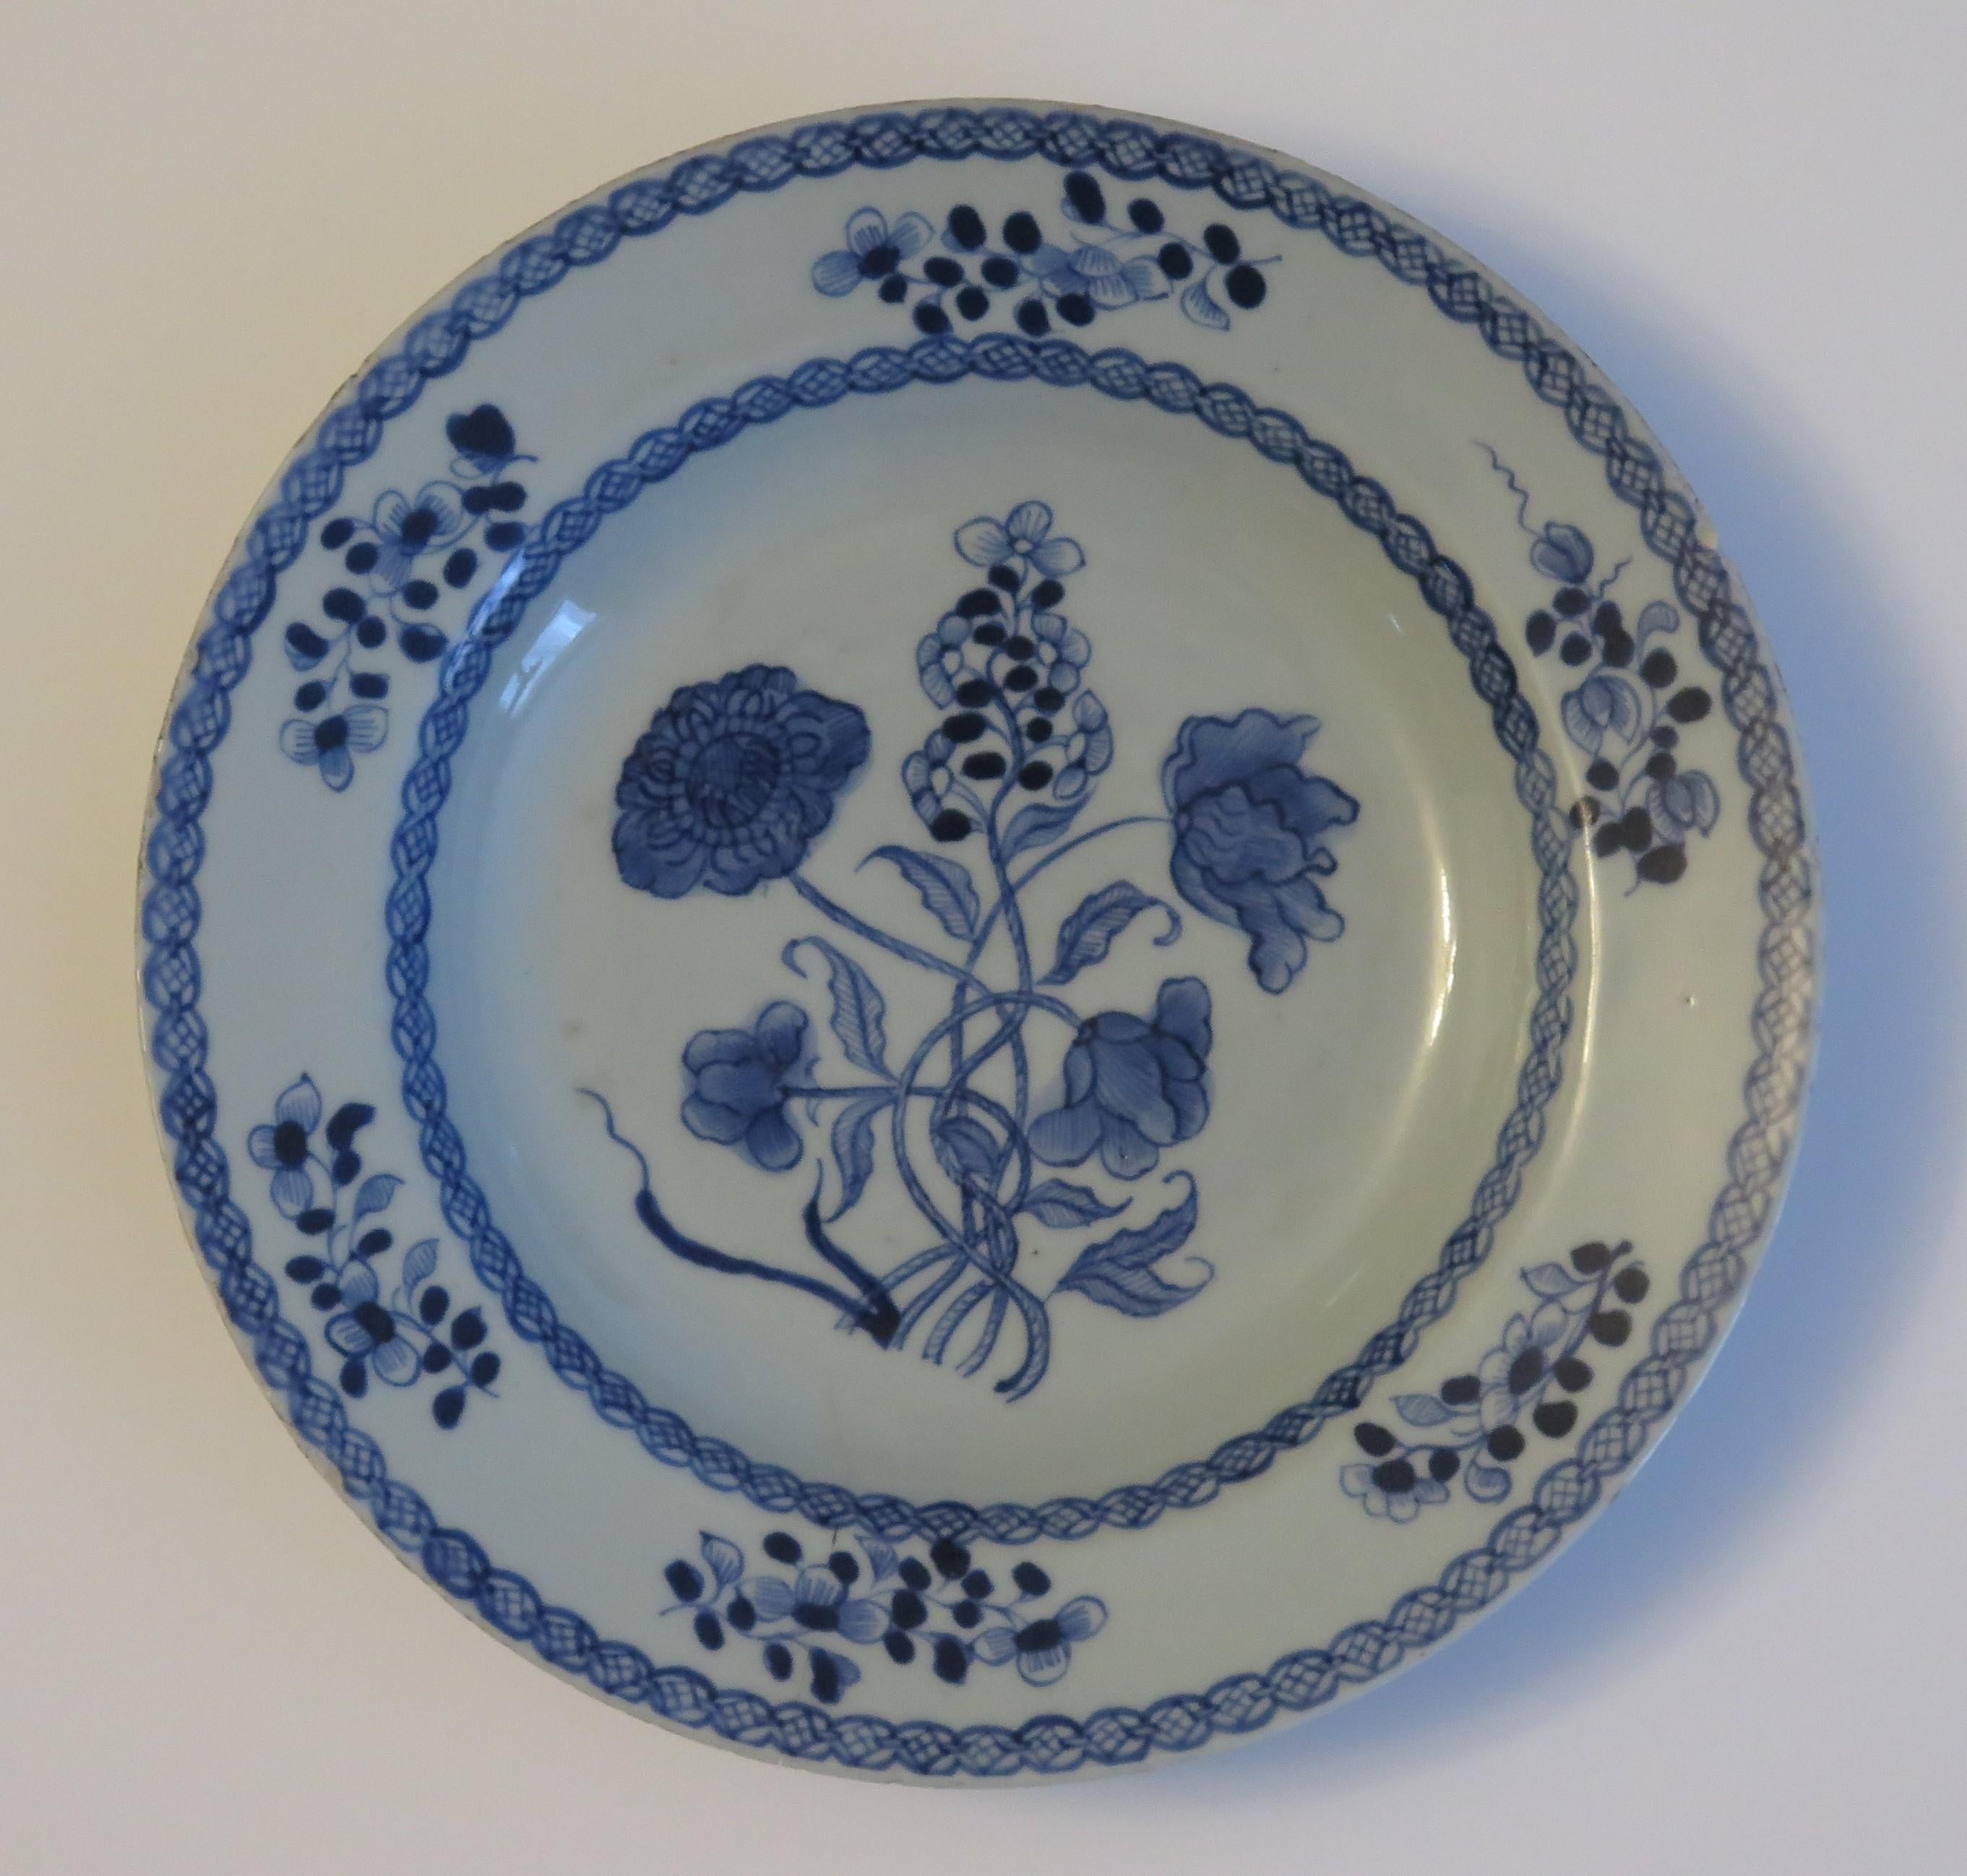 Dies ist eine gute chinesische Porzellan runden tiefen Teller oder Suppenschüssel für den Export (Kanton) Markt gemacht, in der Mitte des 18. Jahrhunderts, Qing-Qianlong-Periode.

Der Teller ist gut von Hand dekoriert mit guten Details in